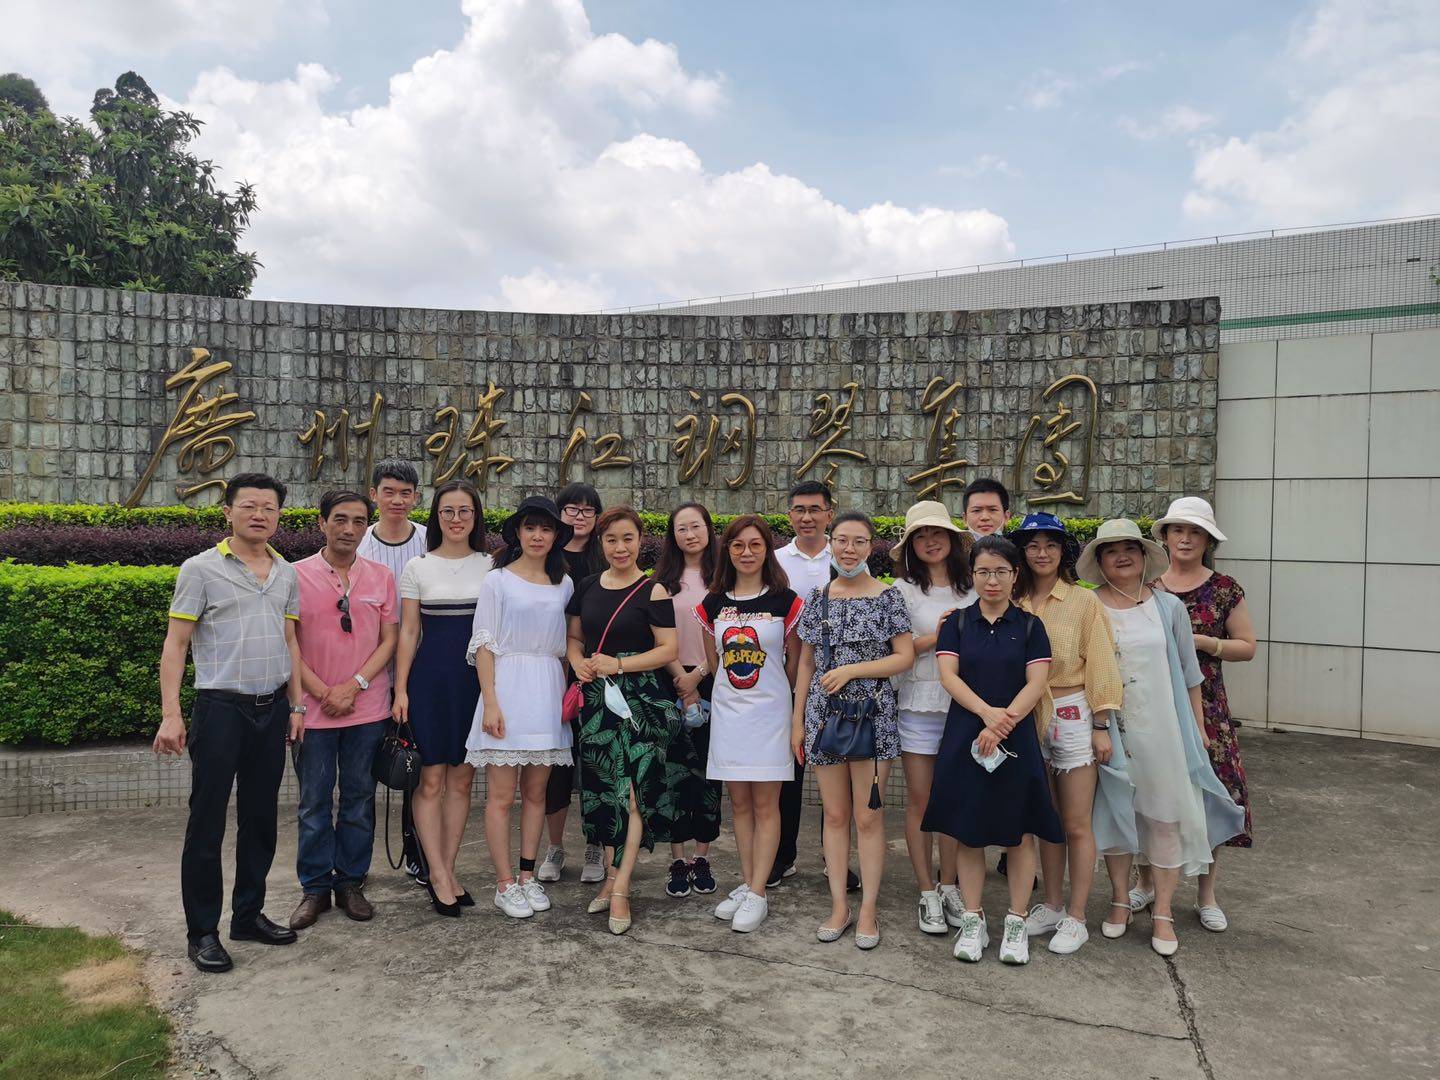 帶領濱城著名鋼琴老師們參訪廣州珠江鋼琴集團